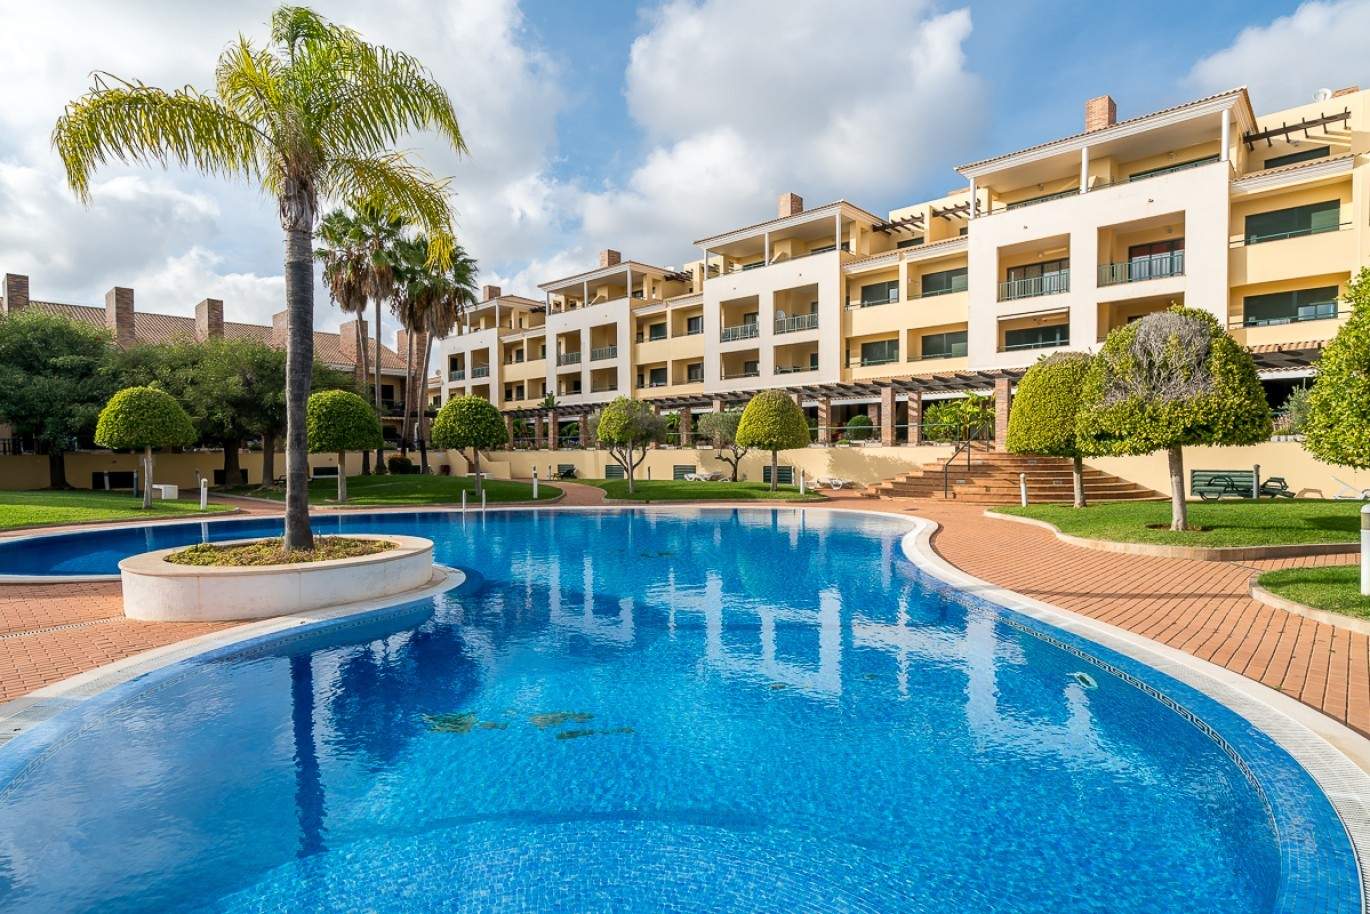 Venda de apartamento com piscina em Vilamoura, Algarve_87867